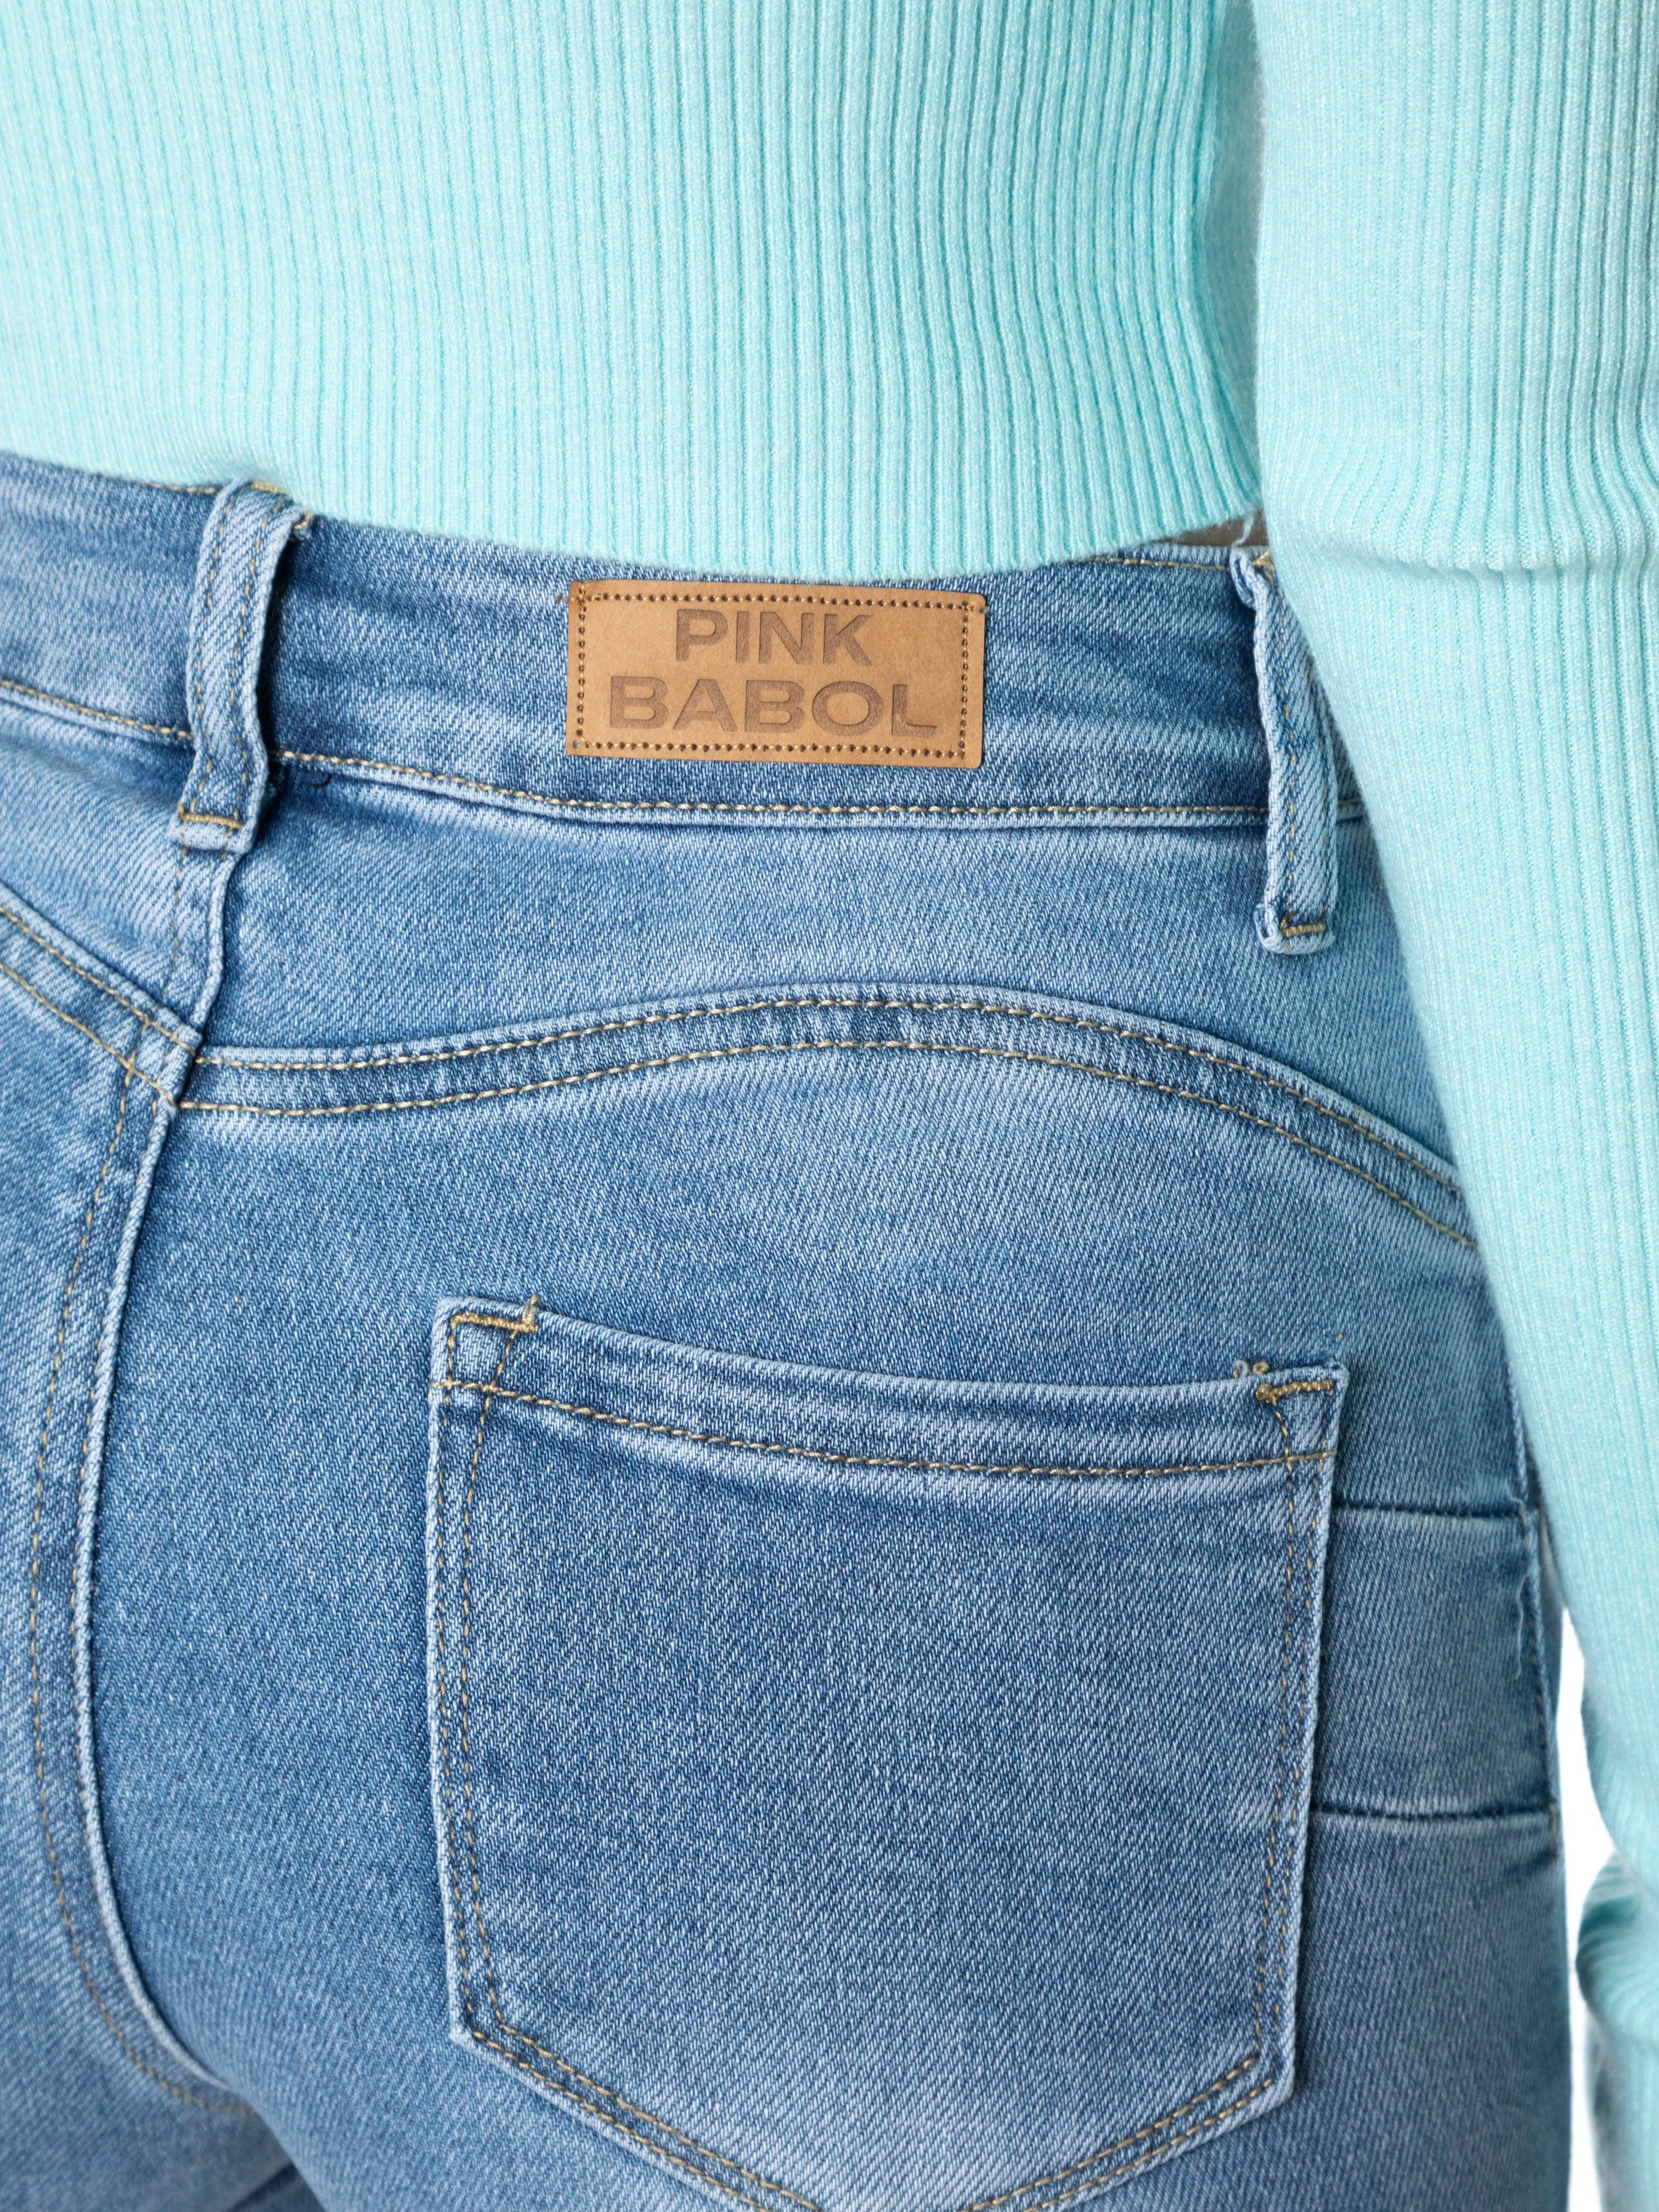 Jeans Skinny push up elasticizzati con strappi-Pink Babol